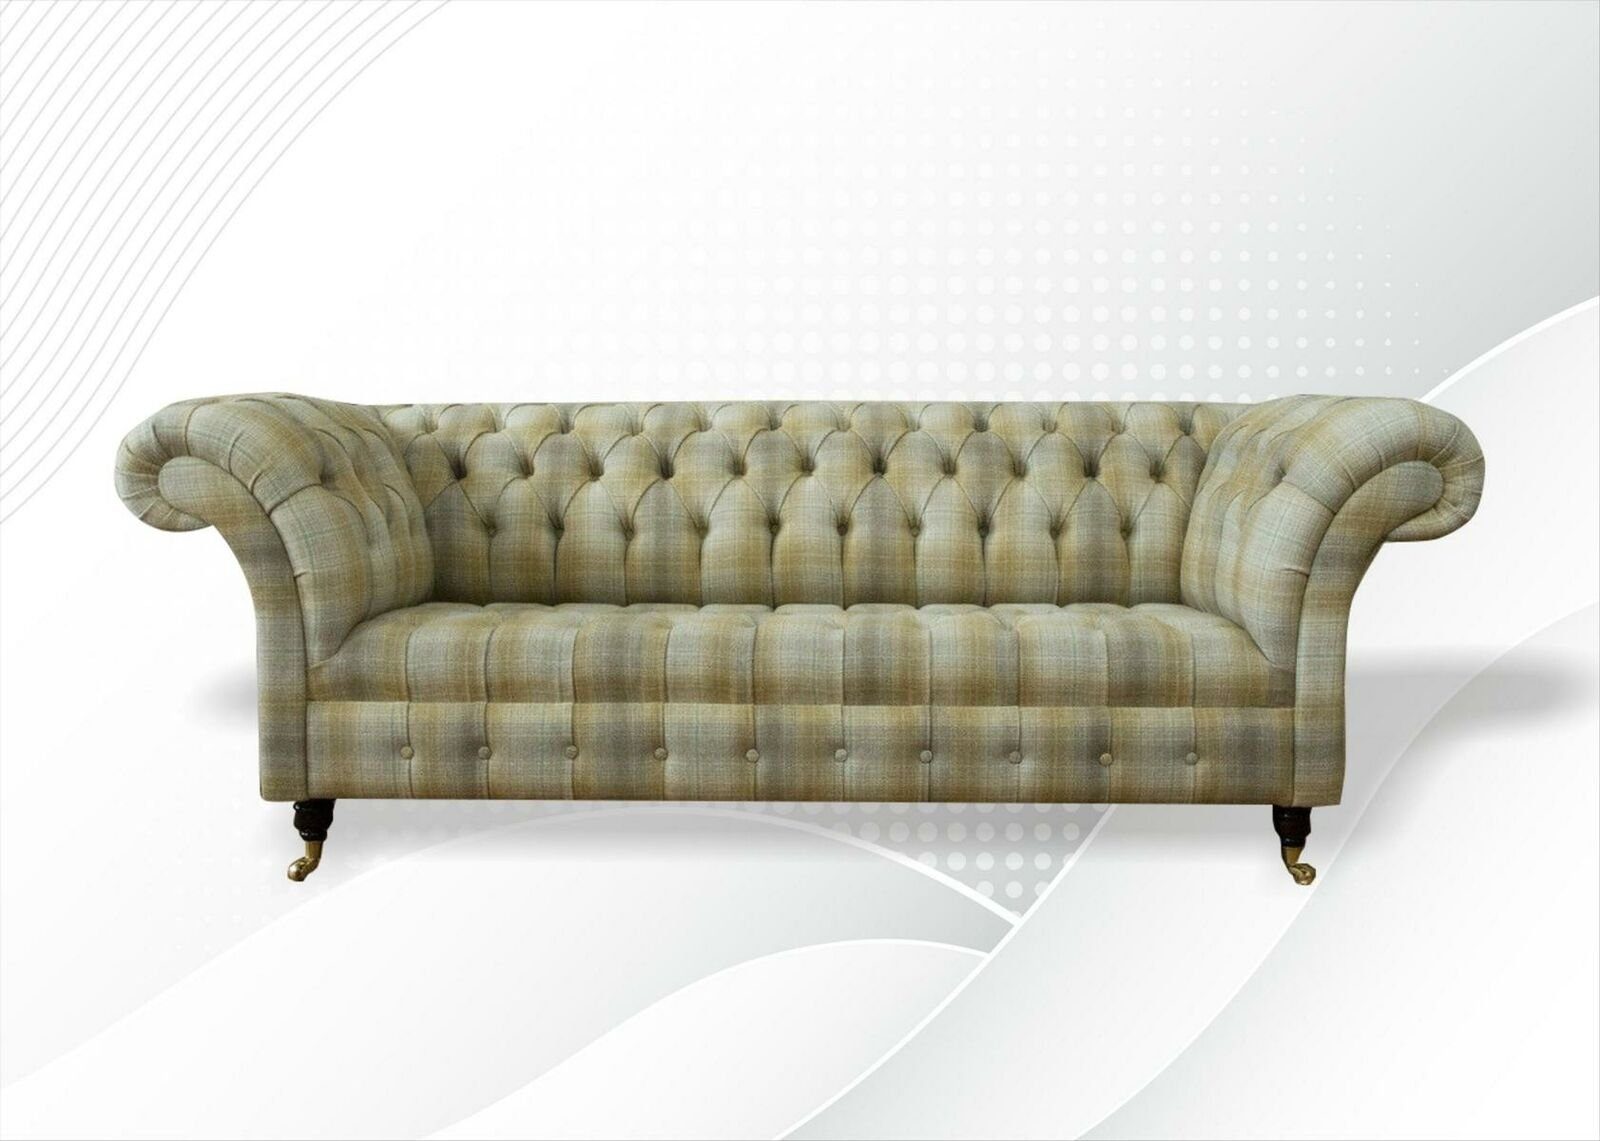 JVmoebel Chesterfield-Sofa Luxuriöse Beige Chesterfield Couchgarnitur 3+2+1 Sitzer, Made in Europe | Chesterfield-Sofas